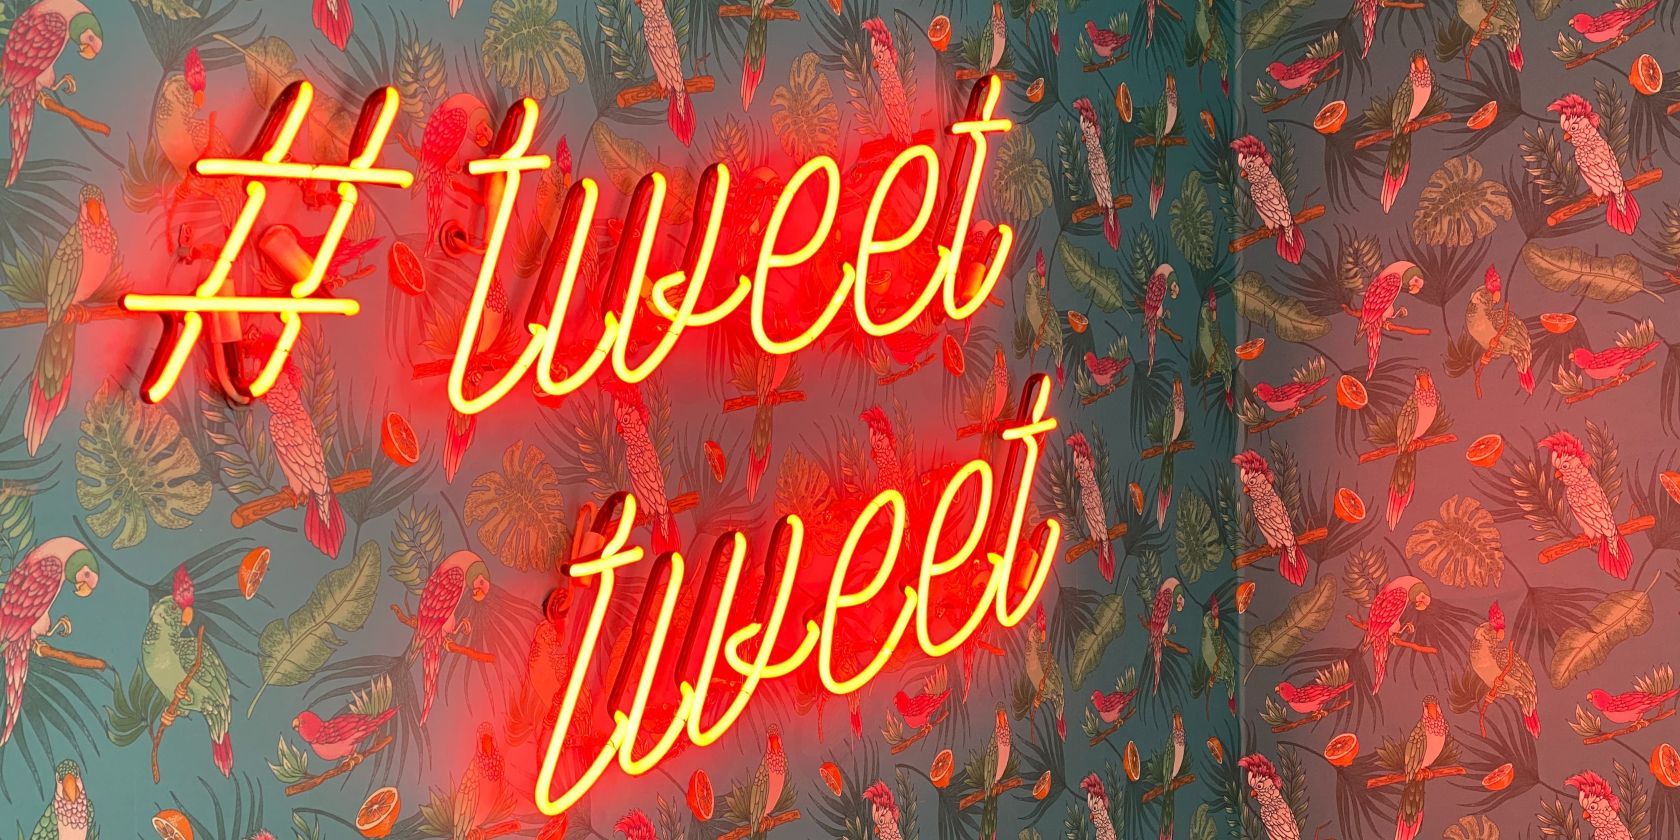 Twitter tweet tweet